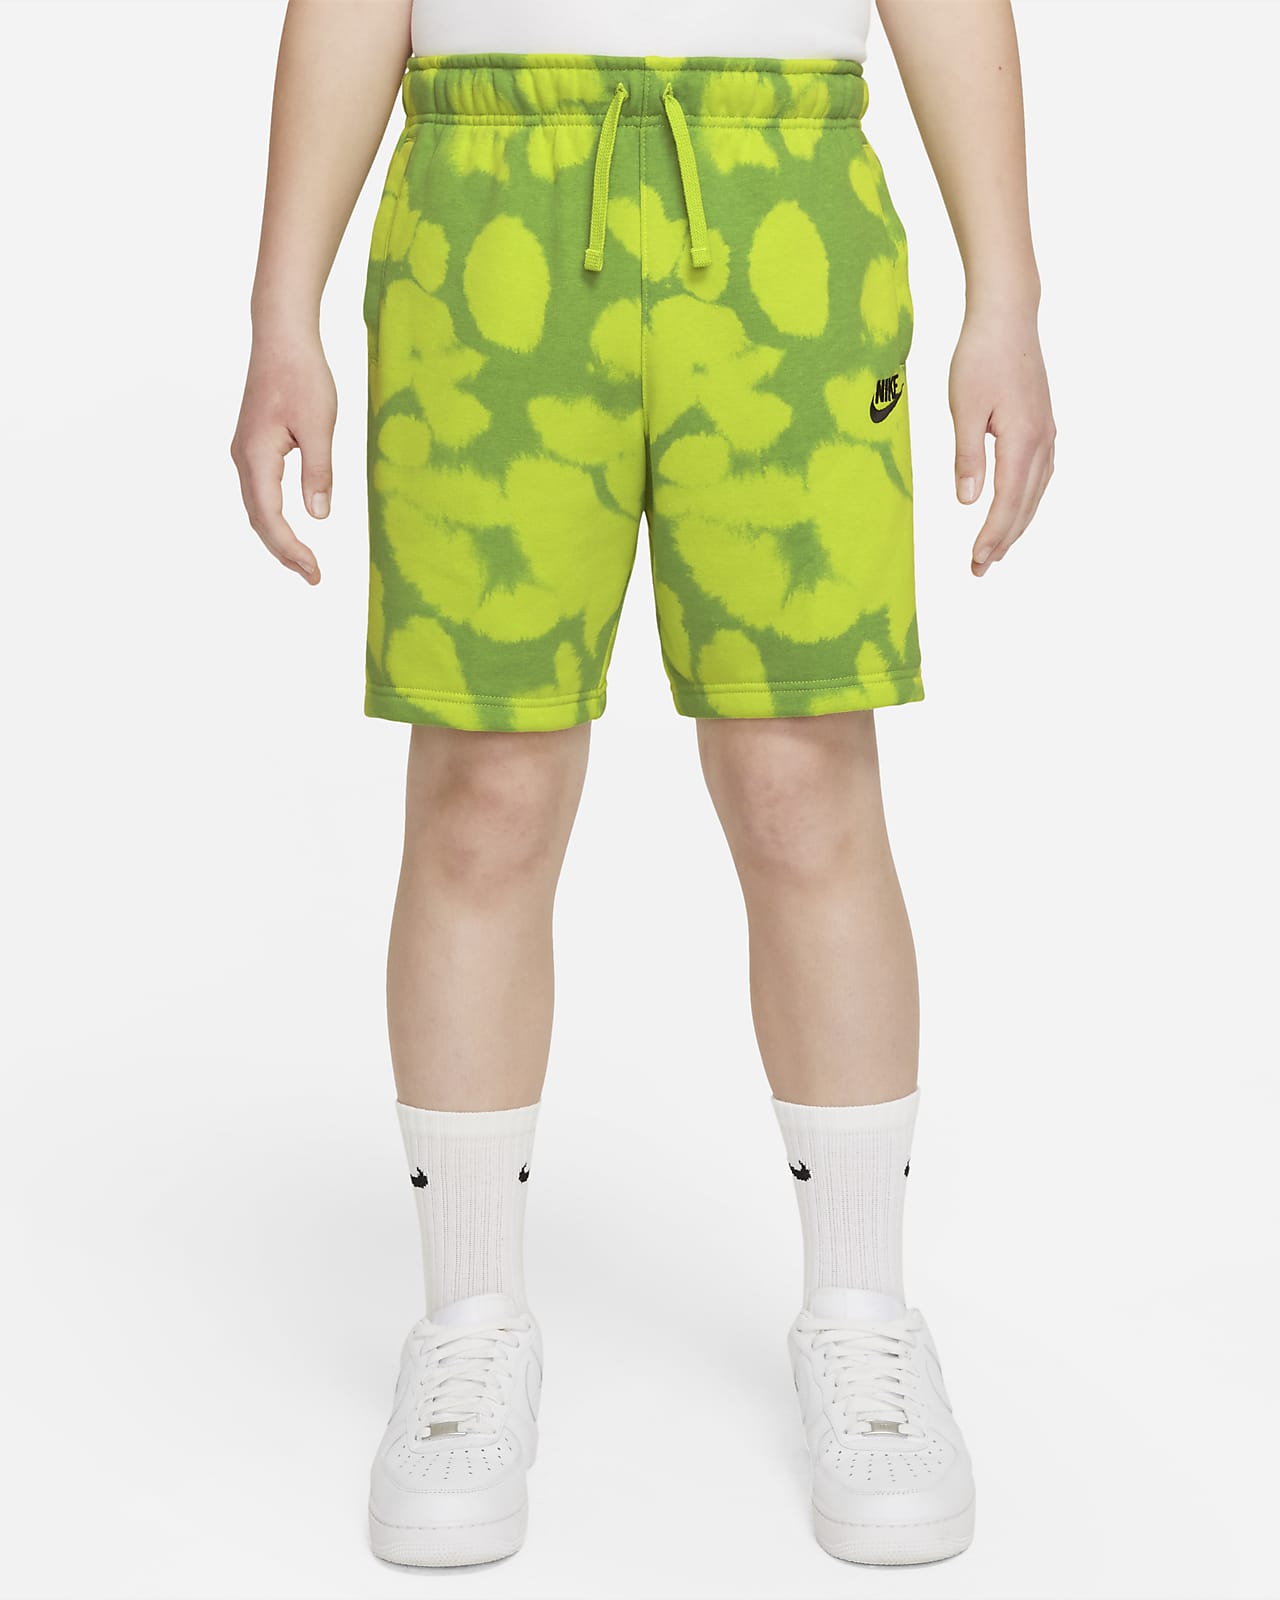 Shorts de French Terry estampados para niño talla grande (talla amplia) Nike Sportswear